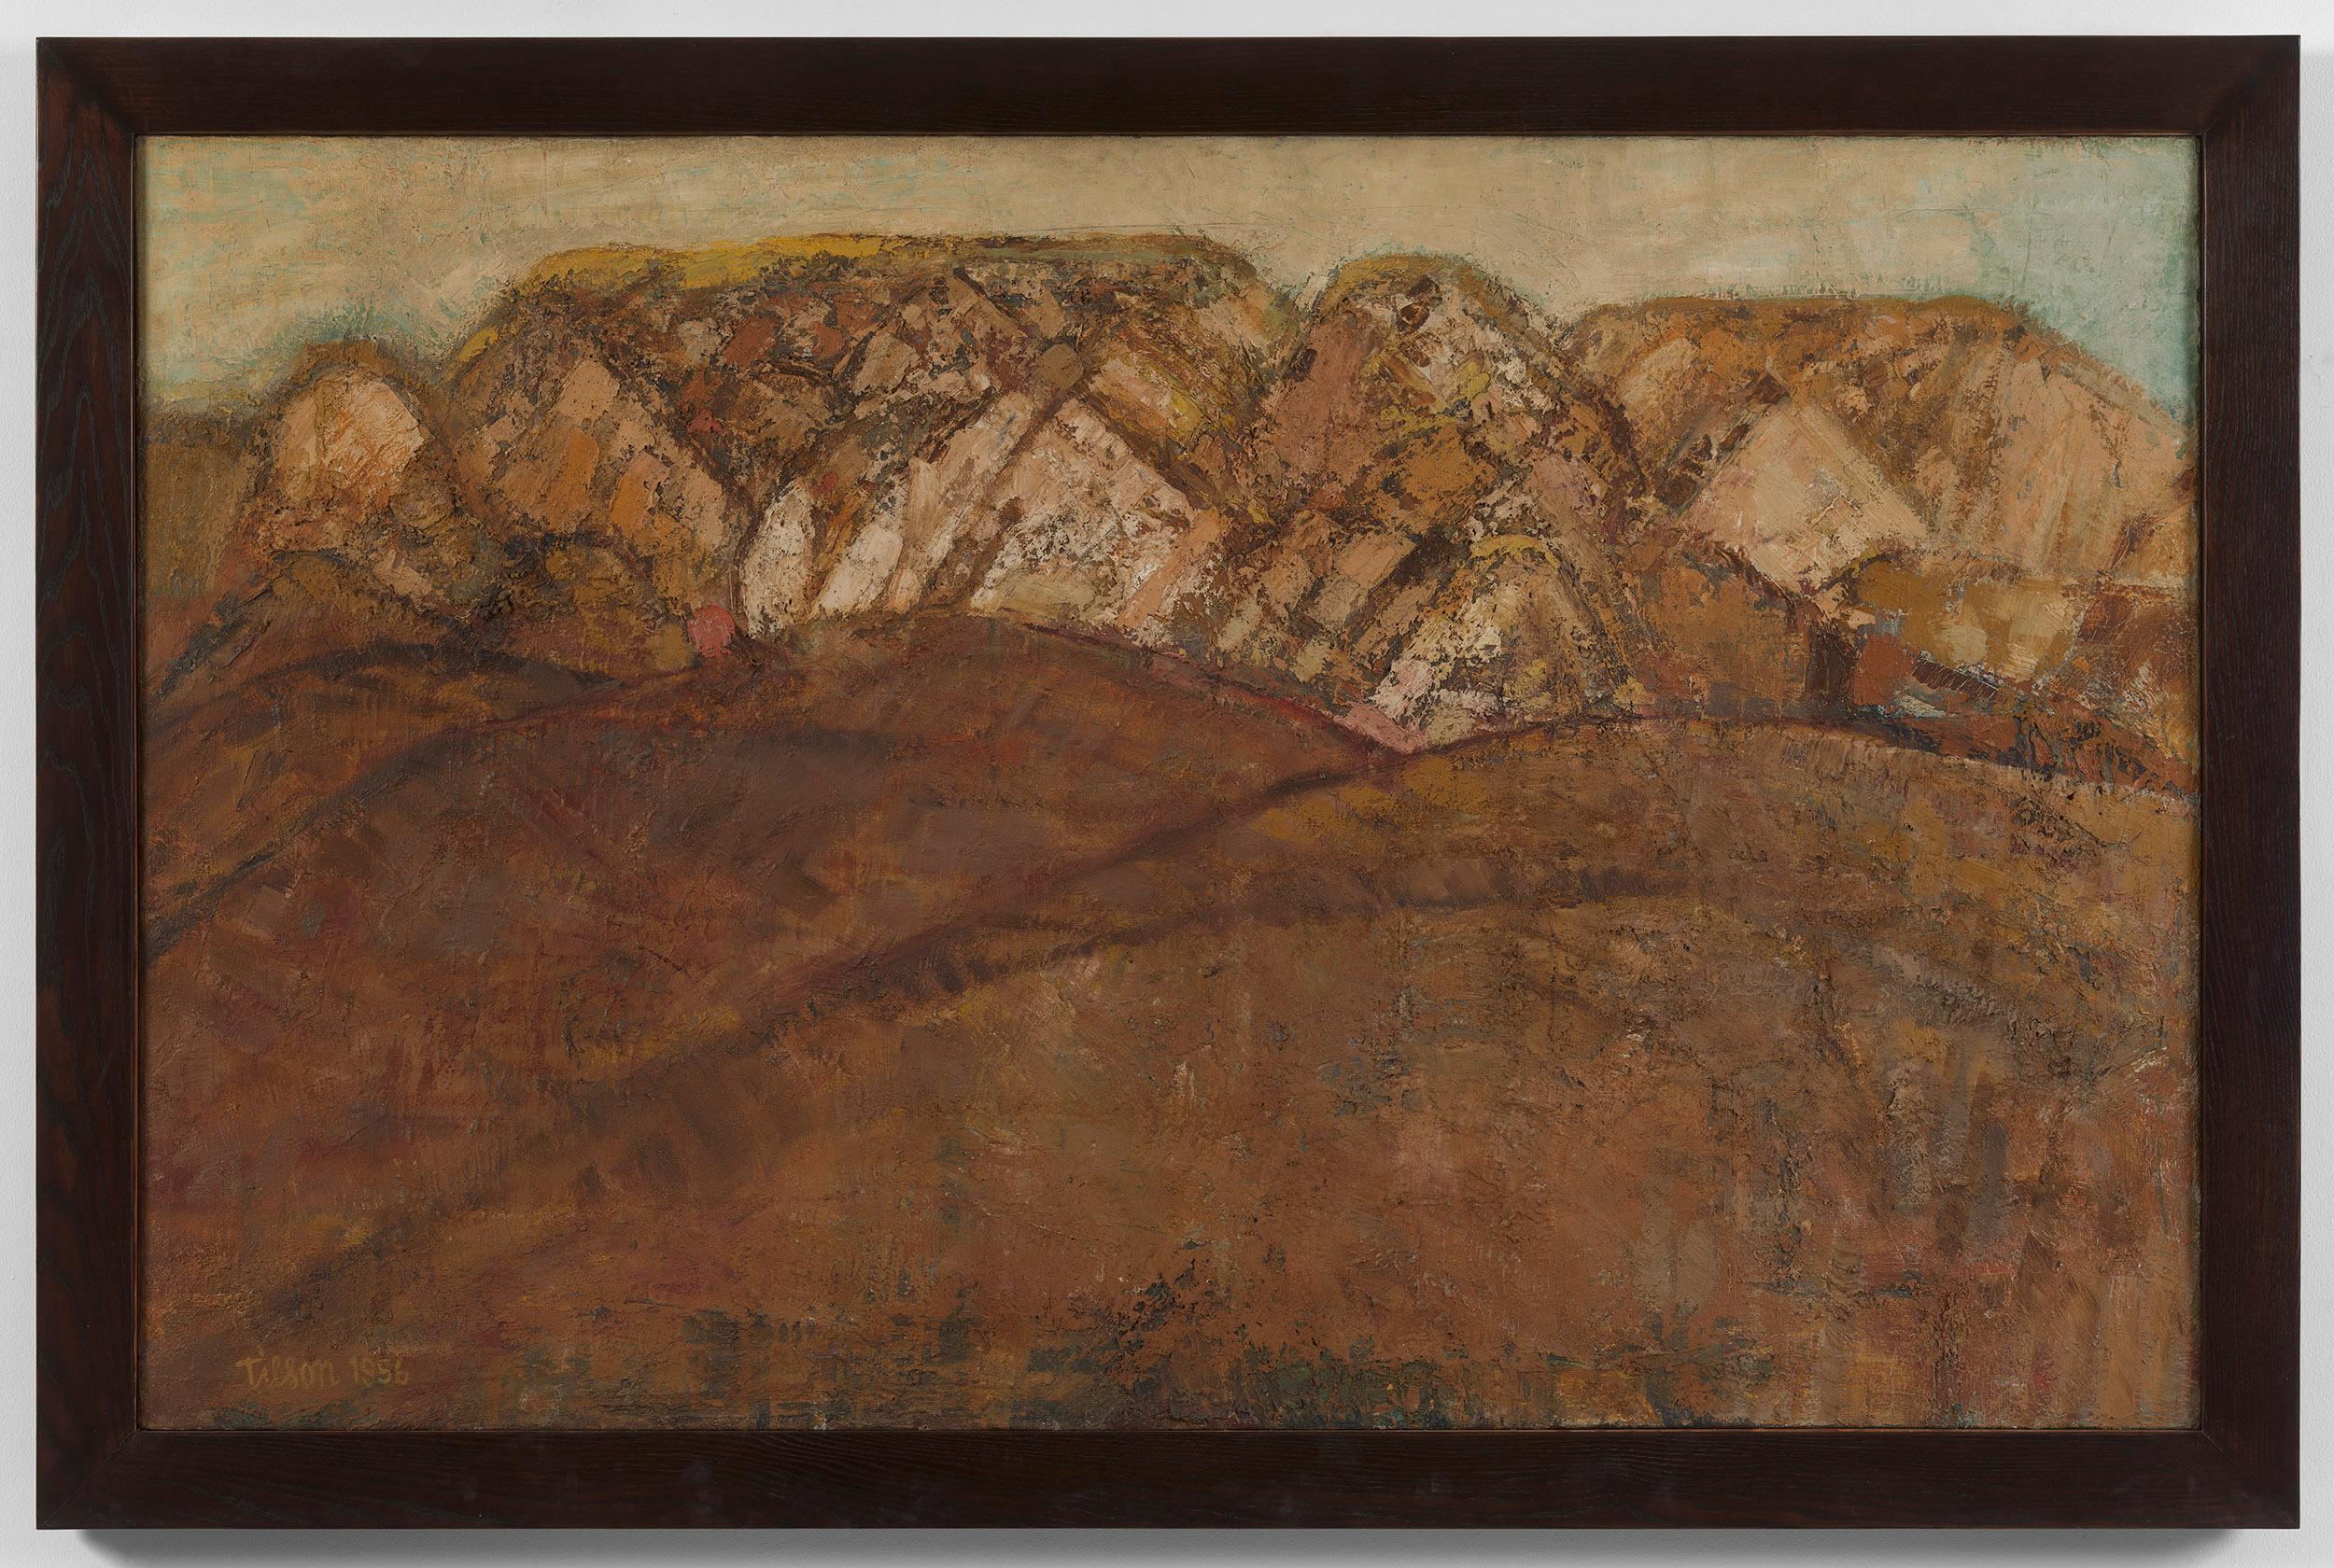 San Quirico d'Orcia I - 20th Century, Oil on canvas by Joe Tilson